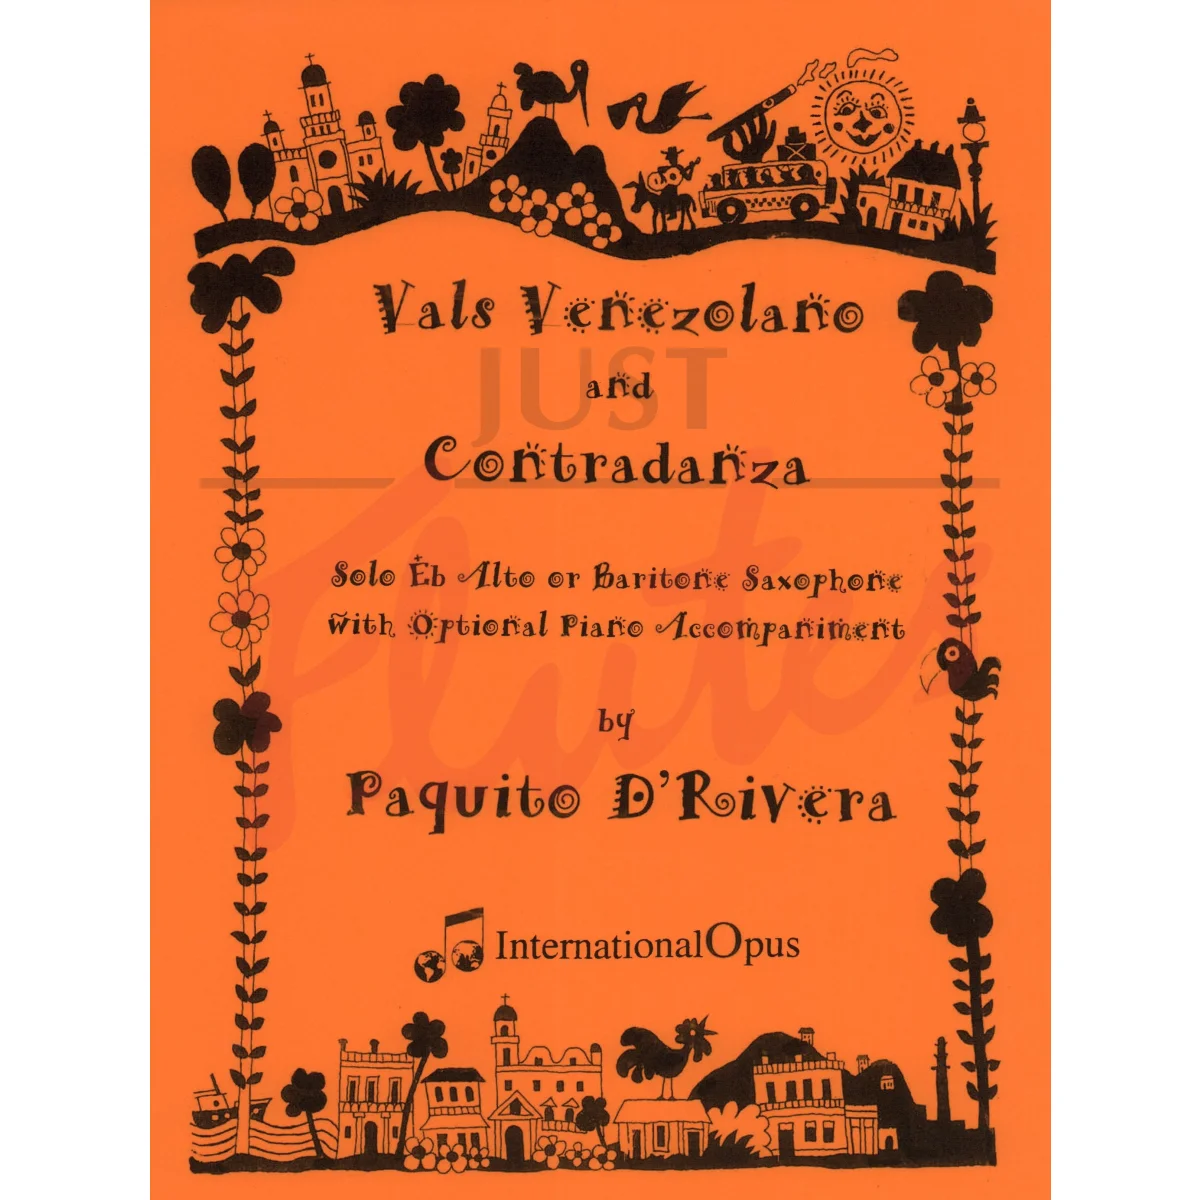 Vals Venezolano and Contradanza for Alto (or Baritone) Saxophone and optional Piano